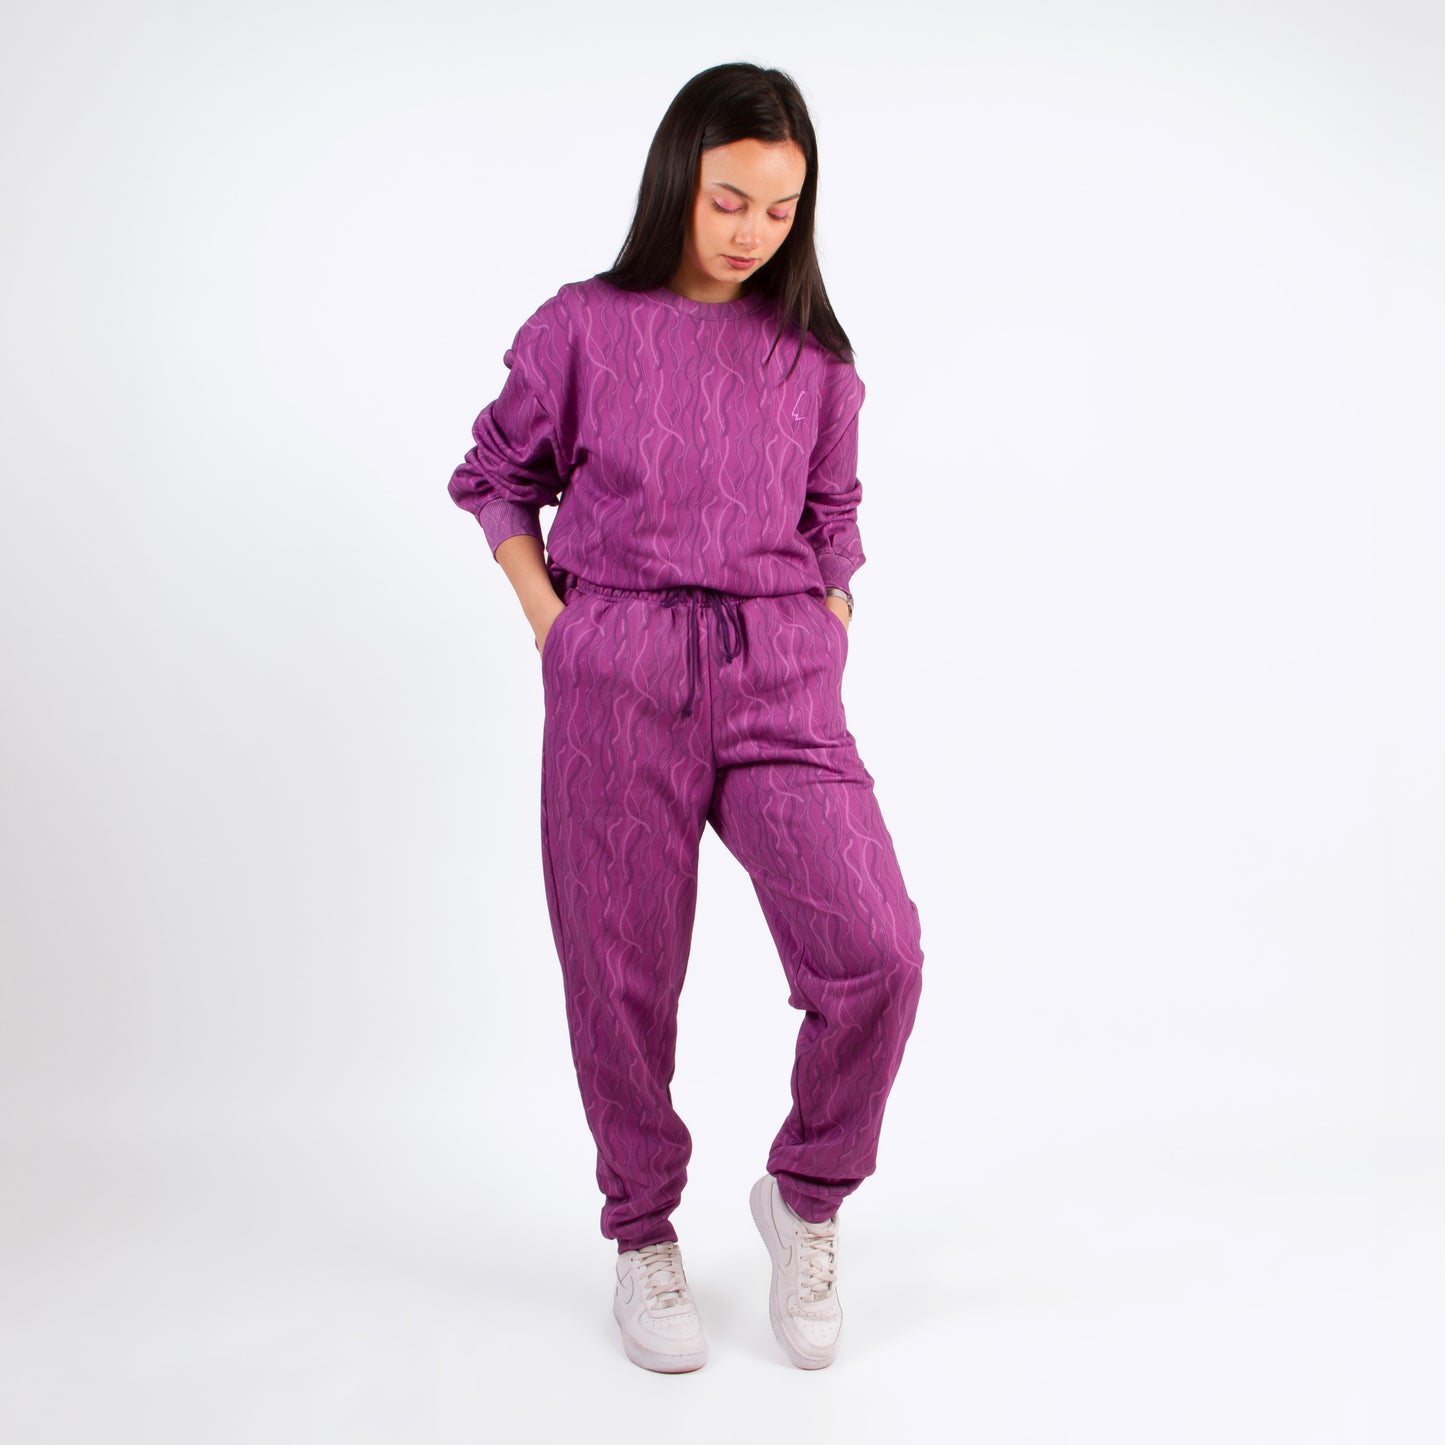 lucewear: femme portant un ensemble de survêtement violet